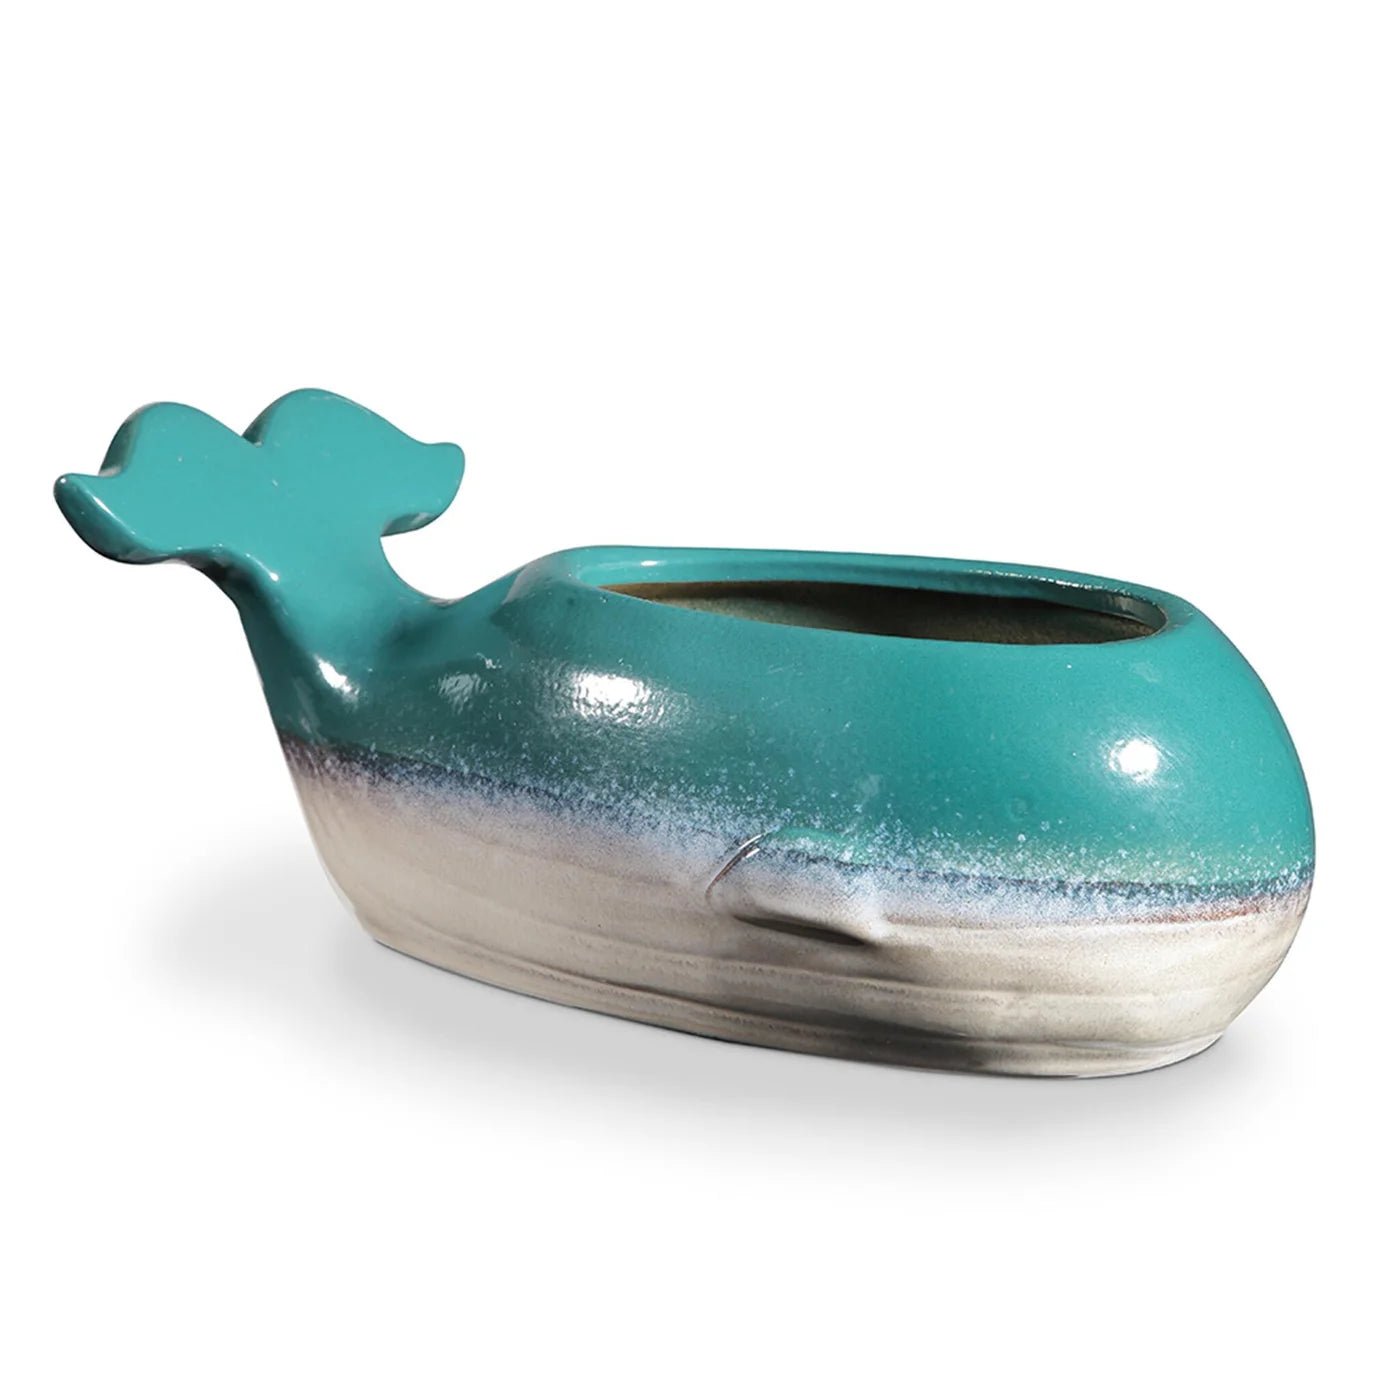 Planter - Whale Ceramic Planter